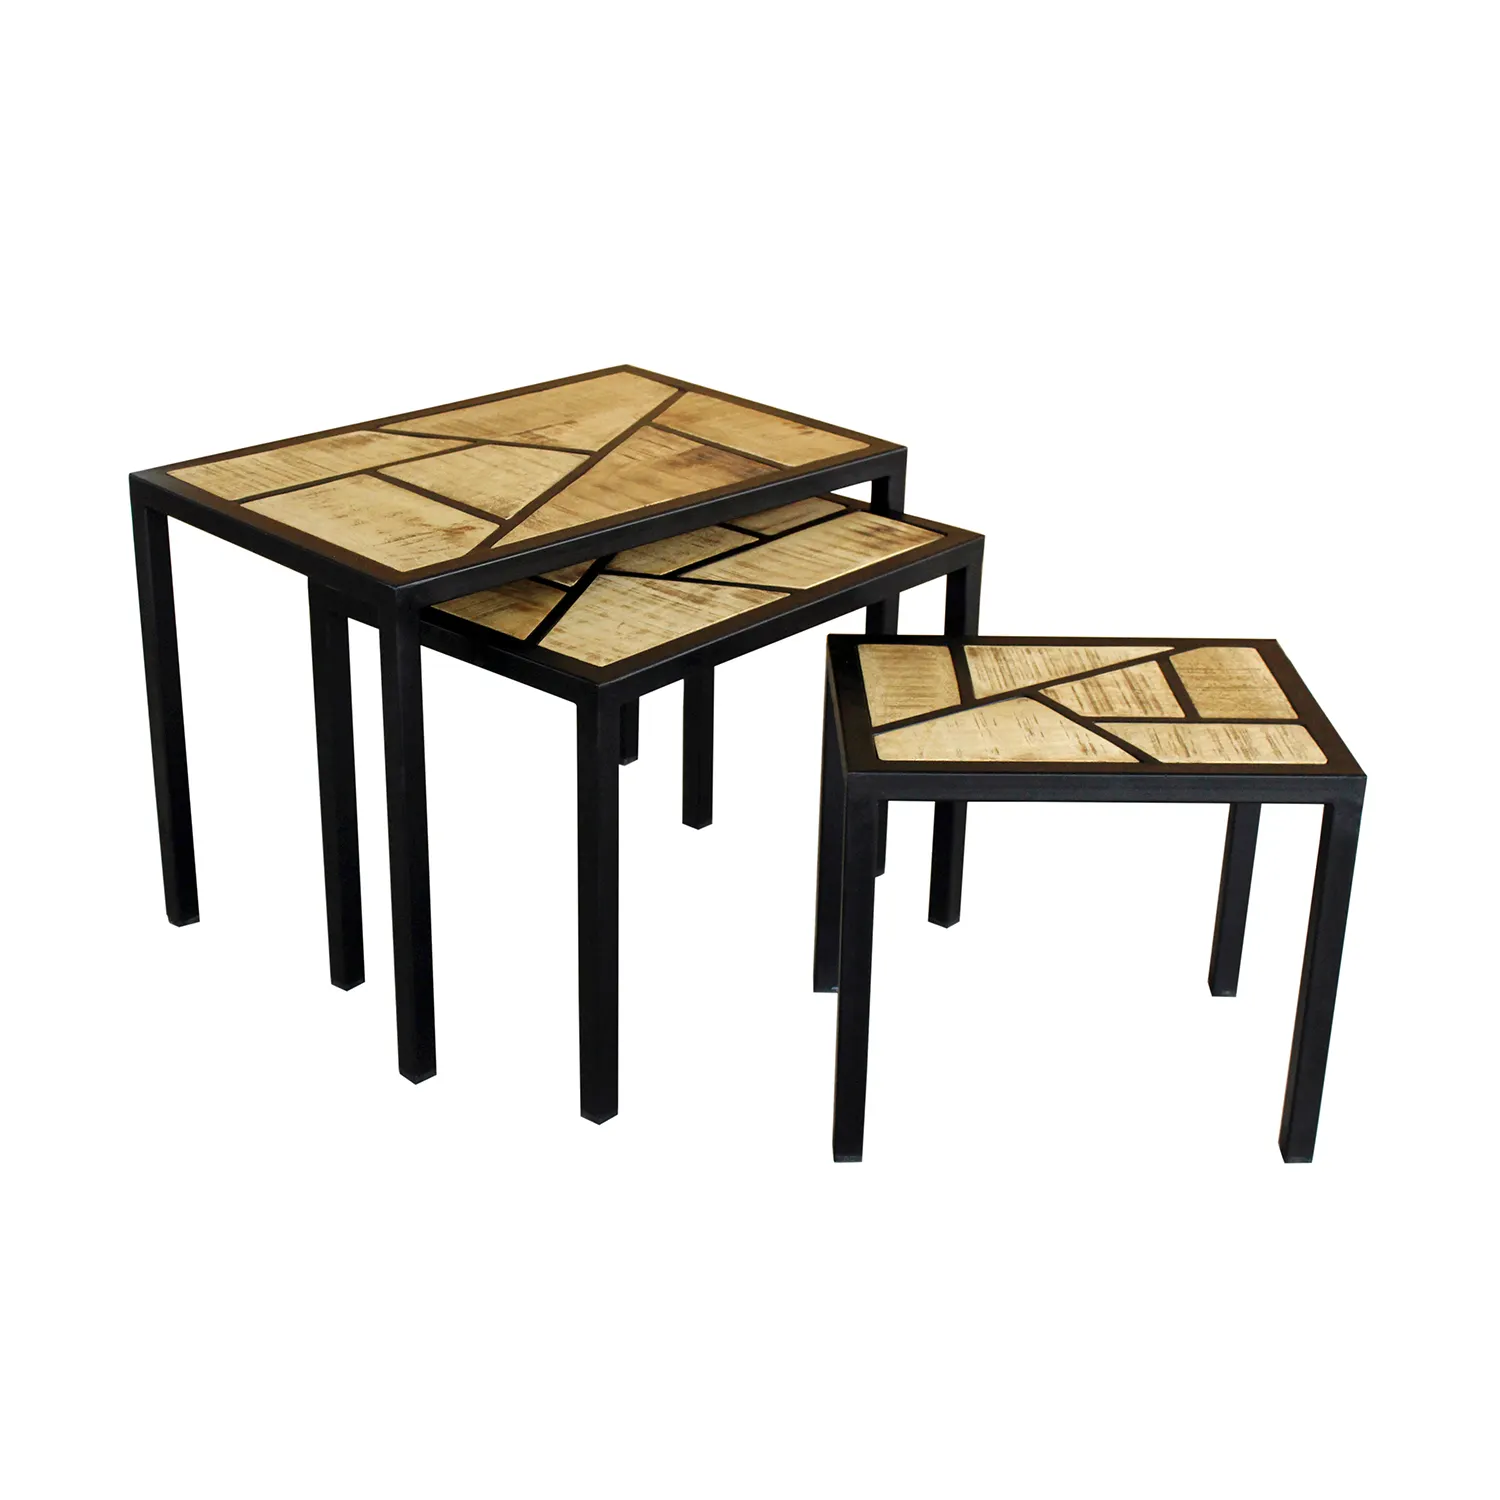 망고 나무 금속 중첩 테이블 새로운 디자인 산업 금속 나무 둥지 테이블 홈 새로운 세트 세 사이드 테이블